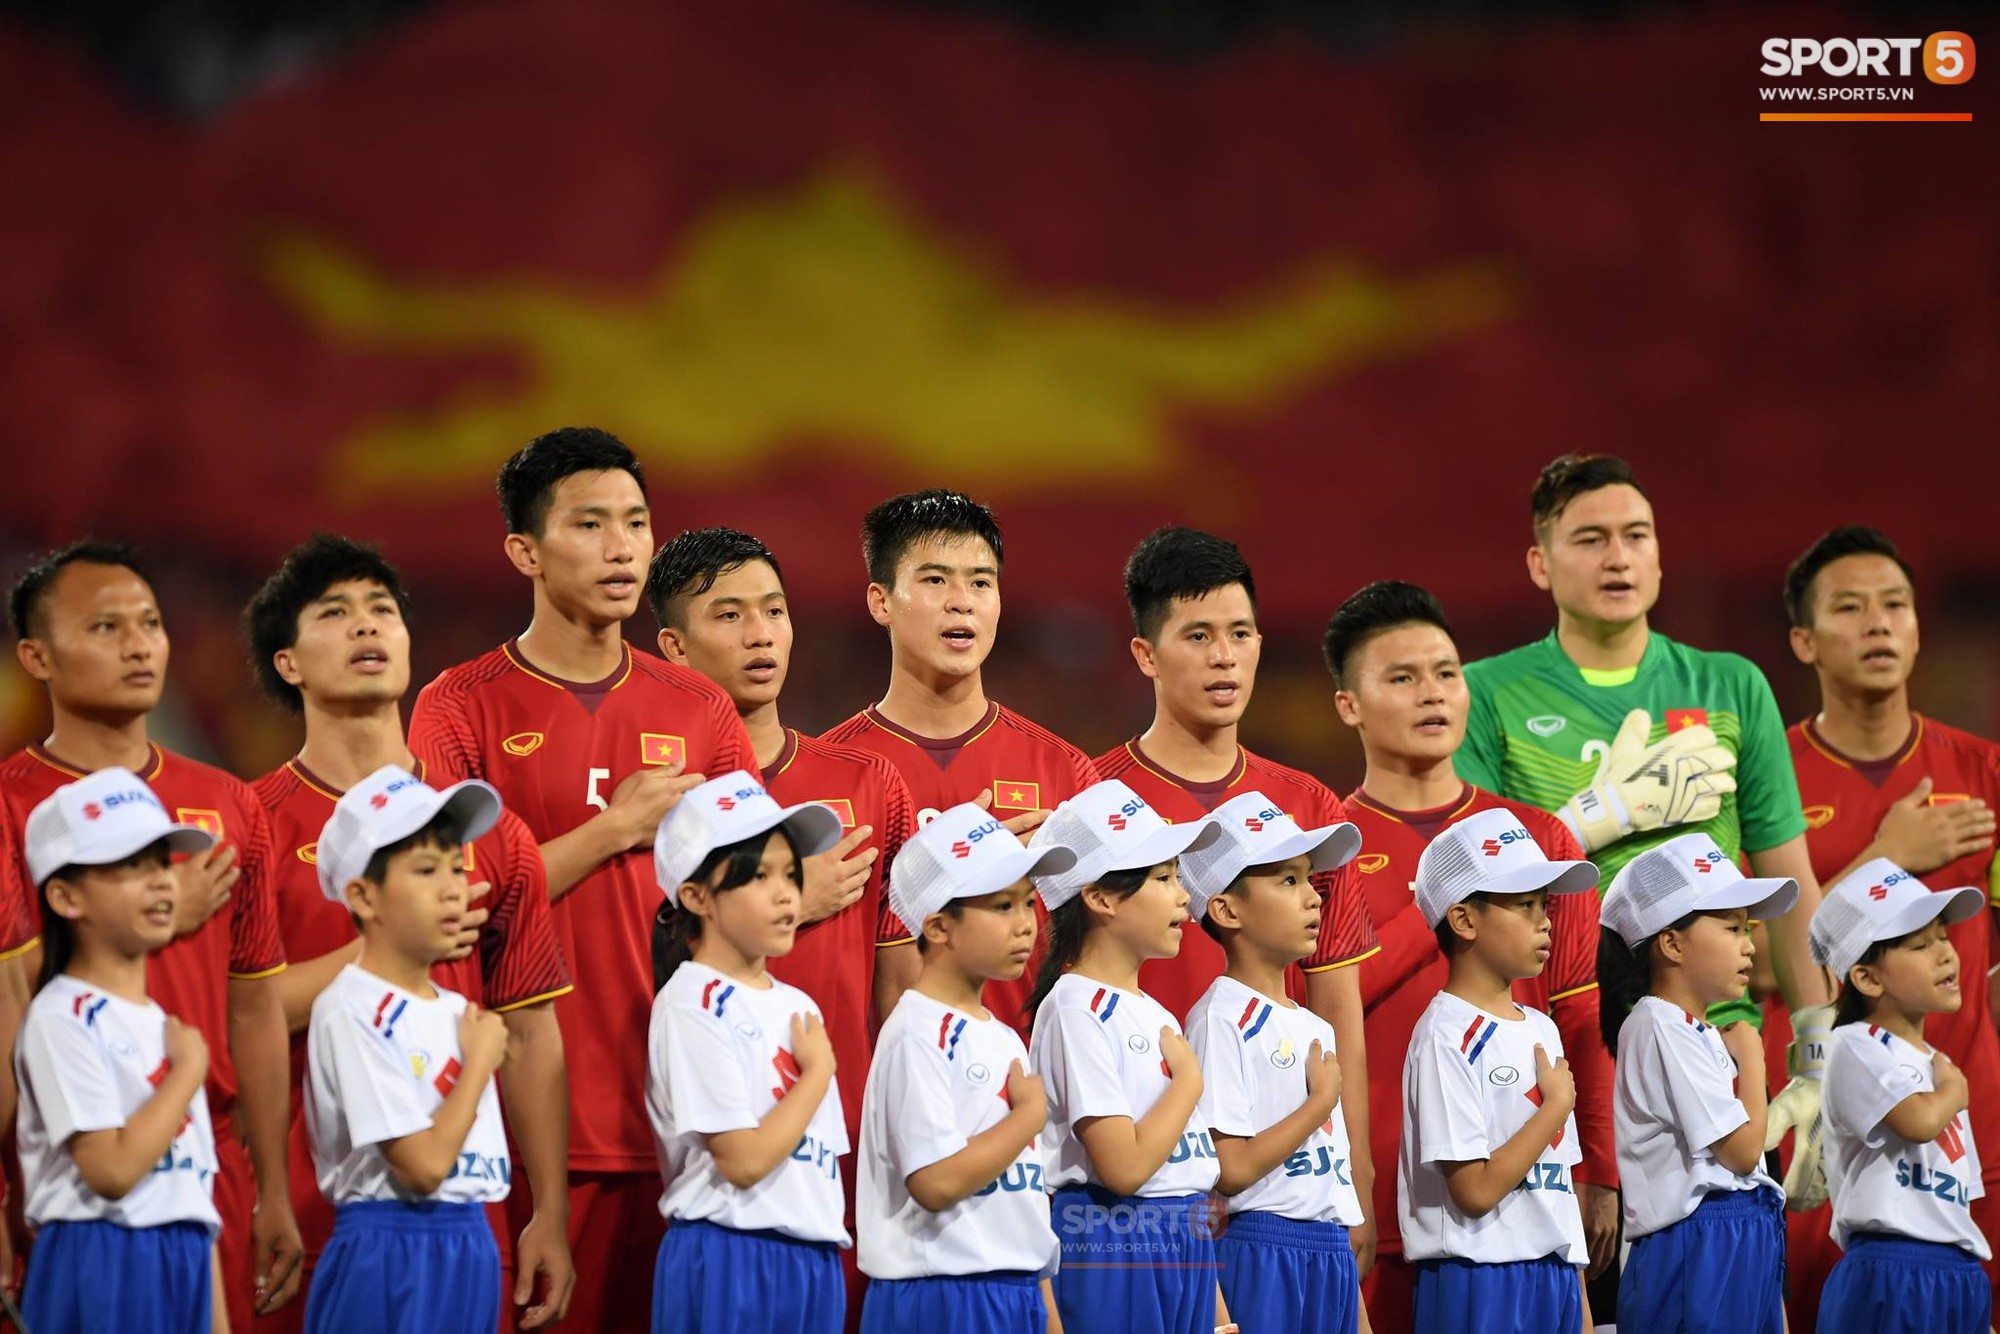 45 cầu thủ Đội tuyển Việt Nam sẽ tiêm vaccine Covid-19 muộn hơn so với dự kiến - Ảnh 1.